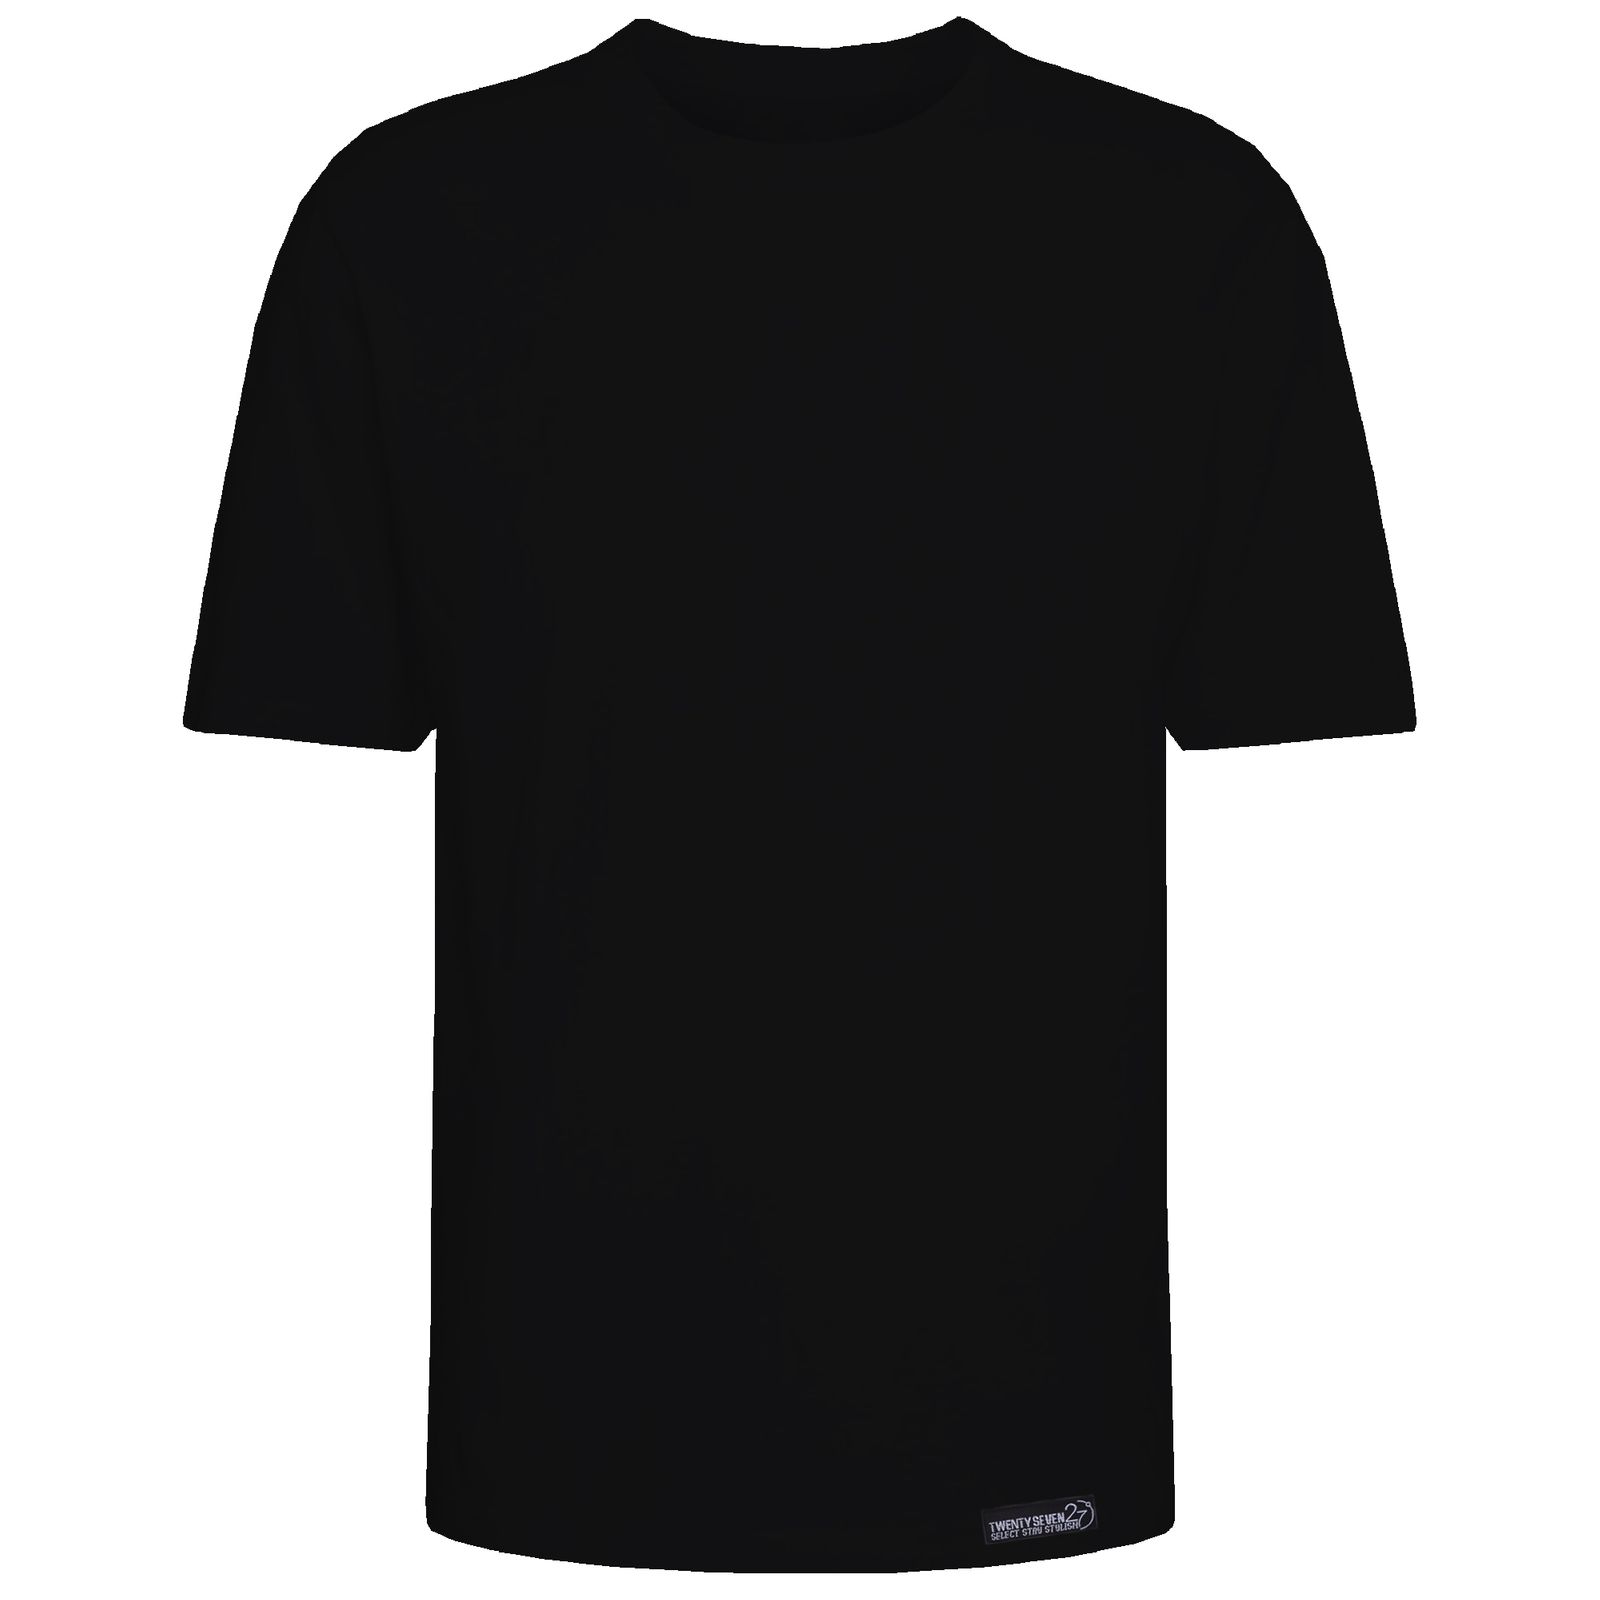 تی شرت آستین کوتاه مردانه 27 مدل simple کد KV319 رنگ مشکی -  - 2